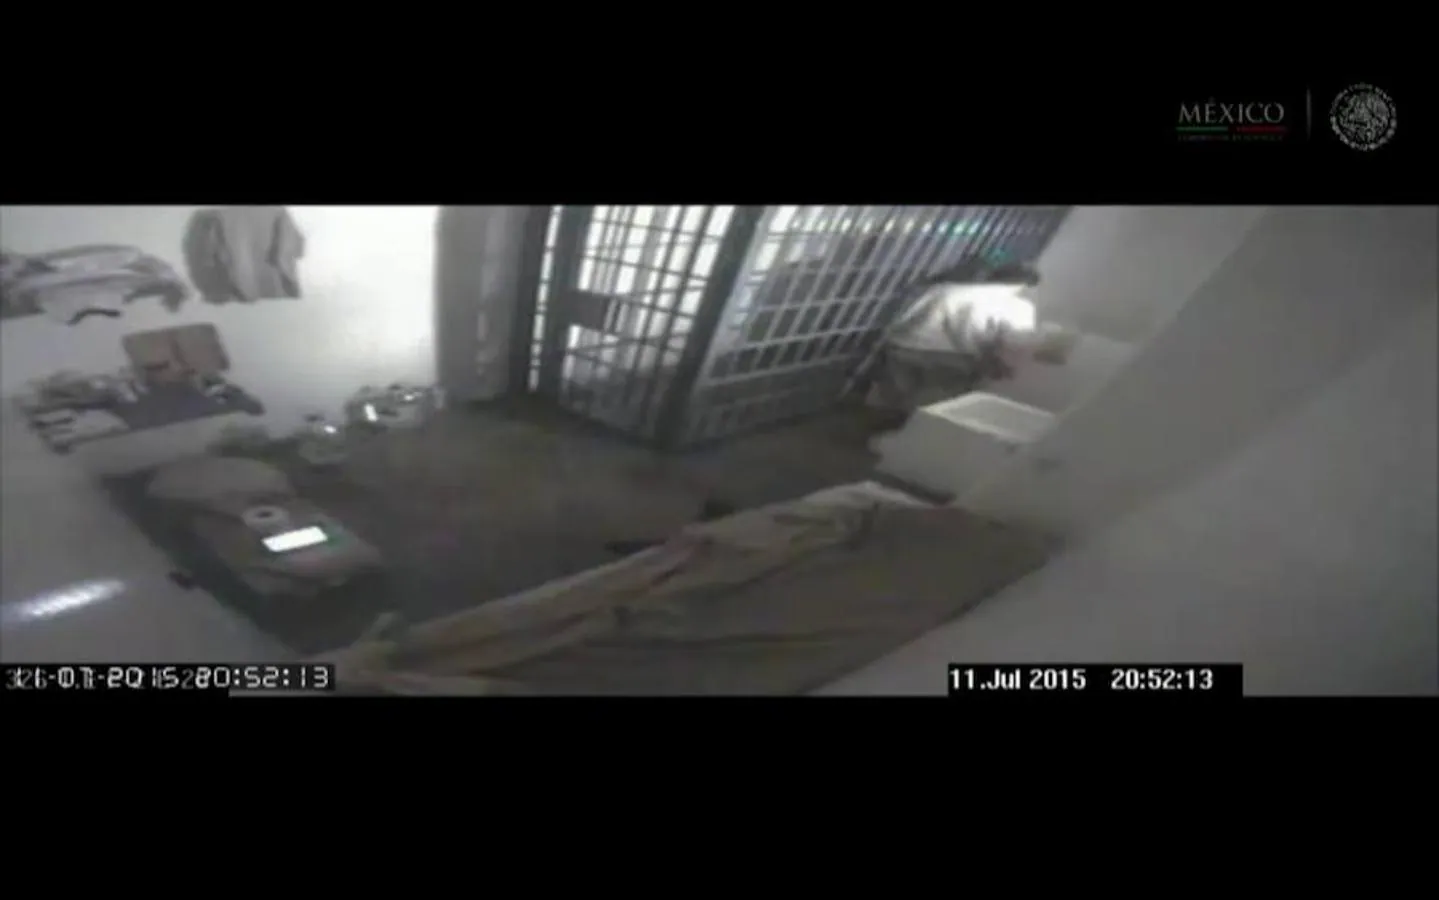 El Chapo volvió a escaparse de su celda en julio de 2015 a través de un túnel de 1,5 kilómetros de longitud. De poco sirvió estar retenido en la prisión de alta seguridad de El Altiplano. Esta es la última imagen del Chapo en su celda antes de escapar por un agujero.. 